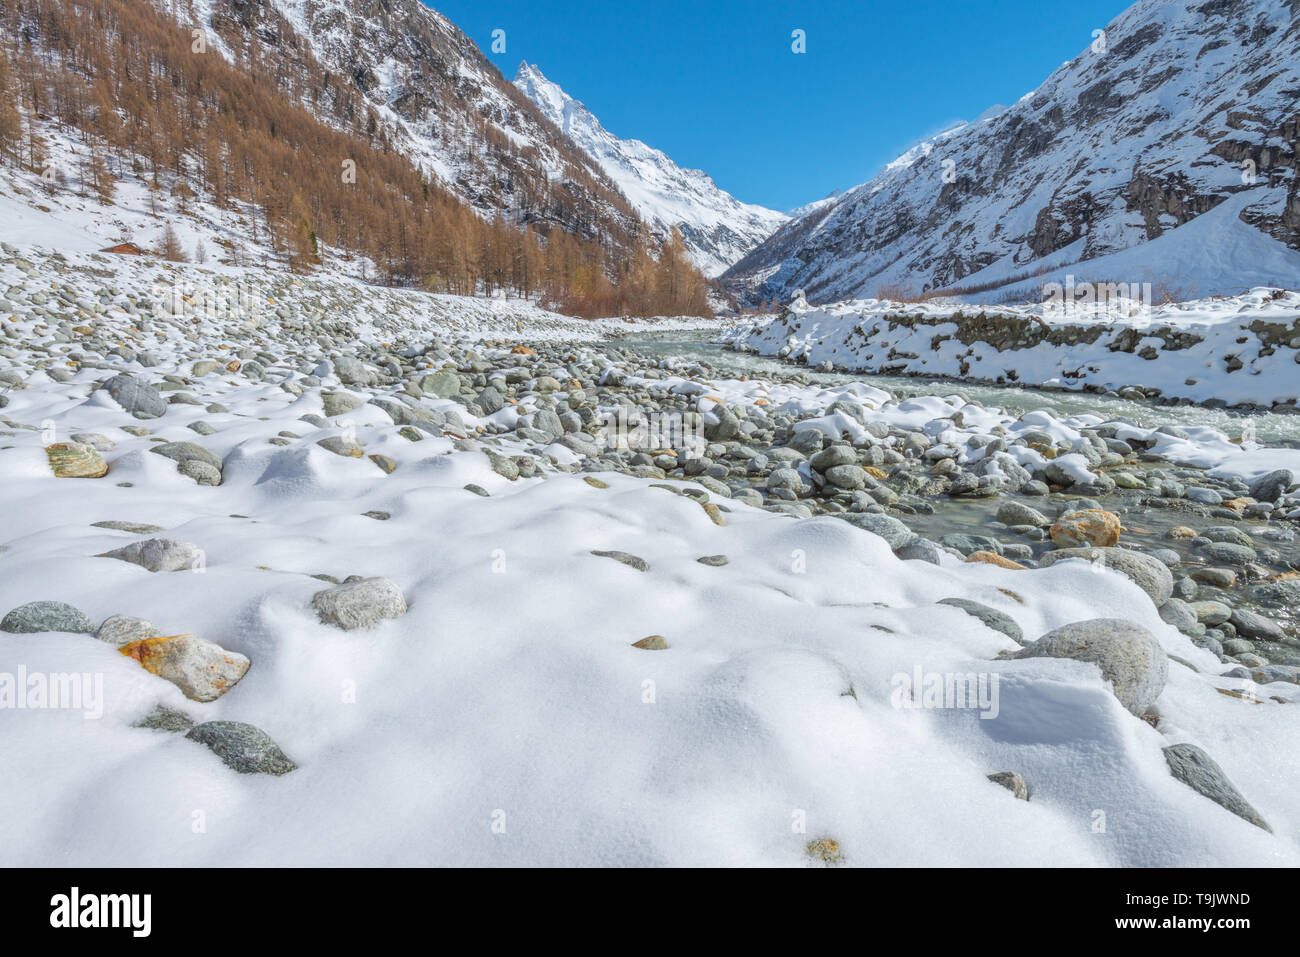 Prominente, schneebedeckte Gipfel überragt das Tal. Schweizer Alpen. Verschneite Tal, glazial-fed River, frischen Schnee auf dem Flussbett Felsen. Stockfoto